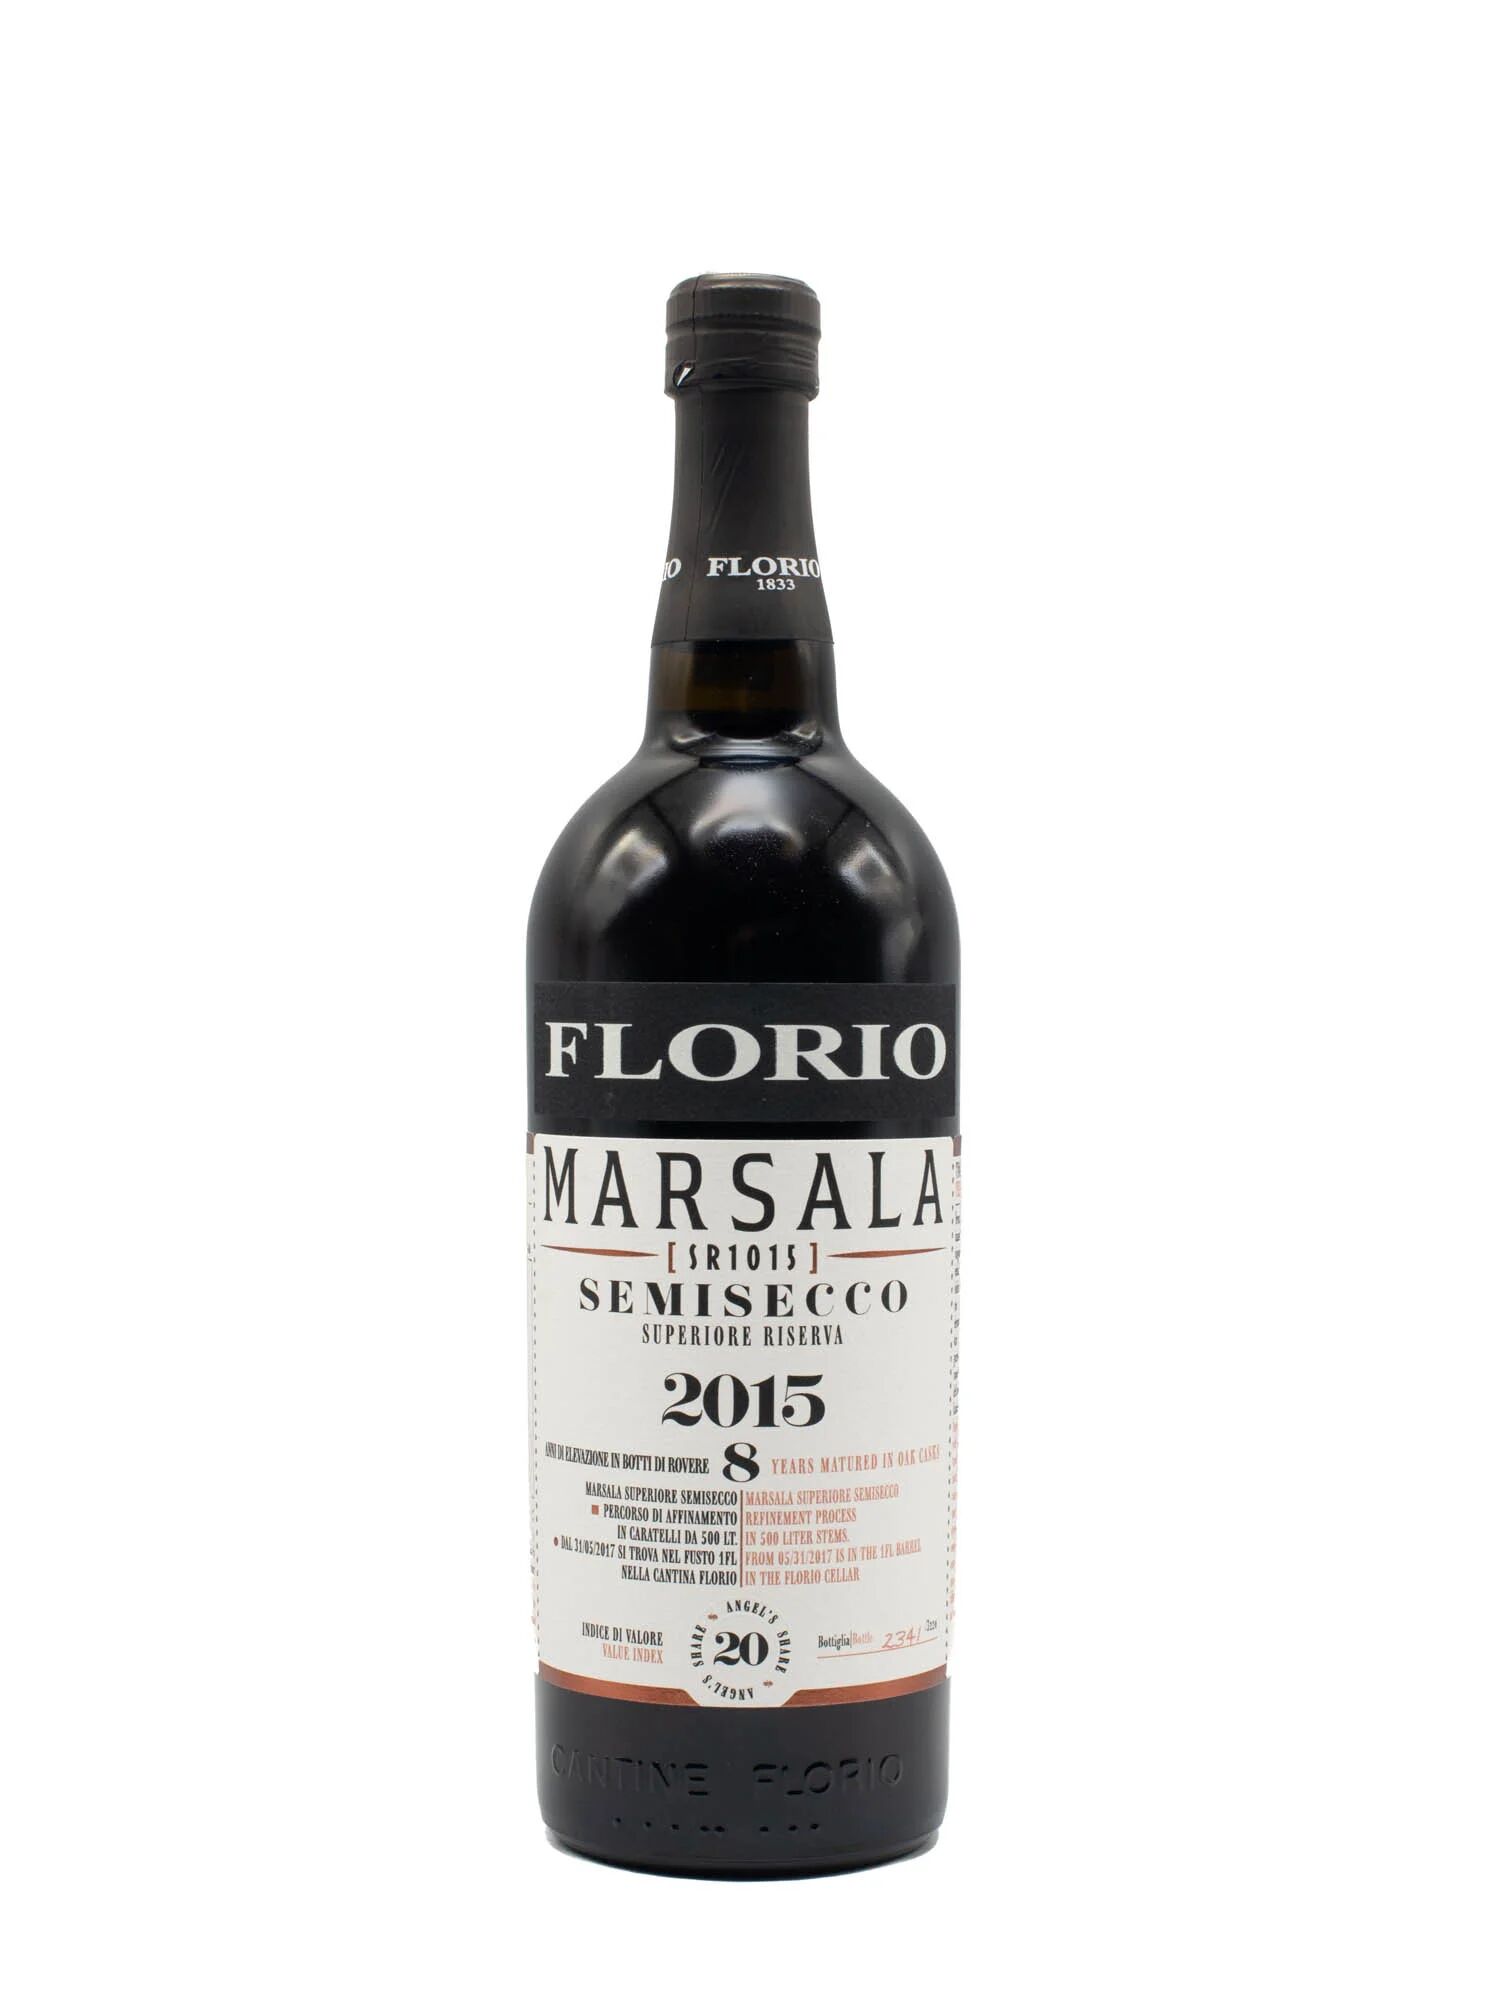 Marsala Florio Superiore Riserva Semisecco 2015